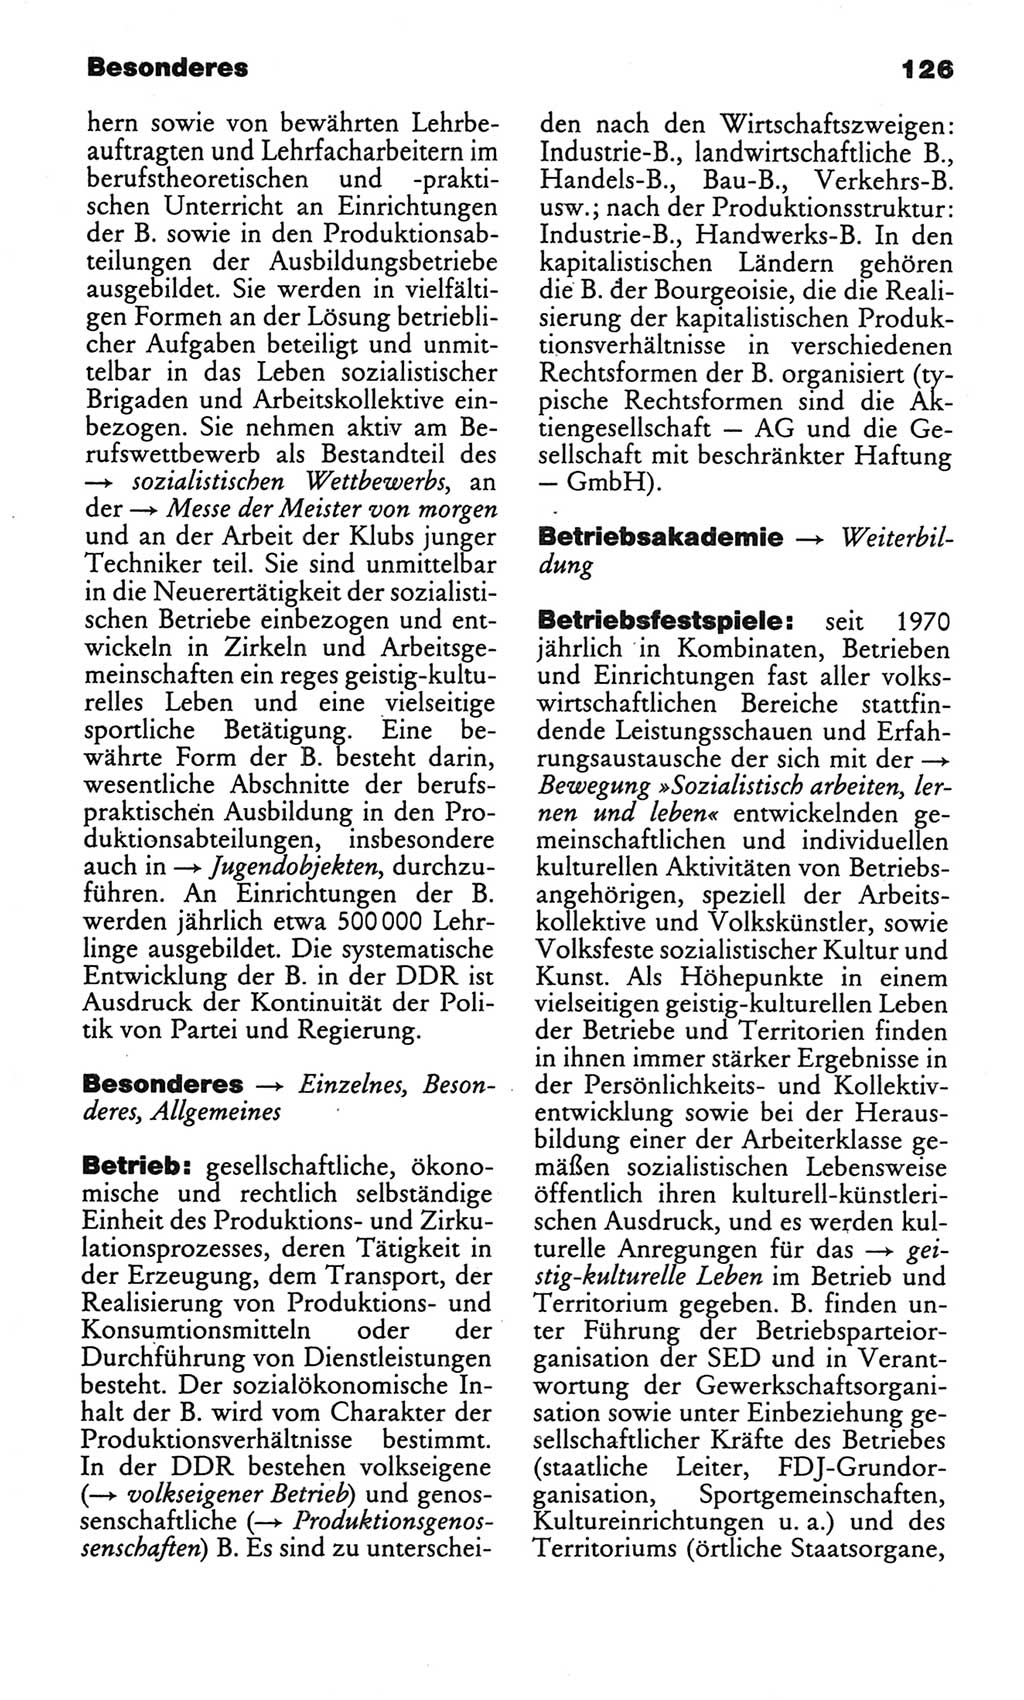 Kleines politisches Wörterbuch [Deutsche Demokratische Republik (DDR)] 1986, Seite 126 (Kl. pol. Wb. DDR 1986, S. 126)